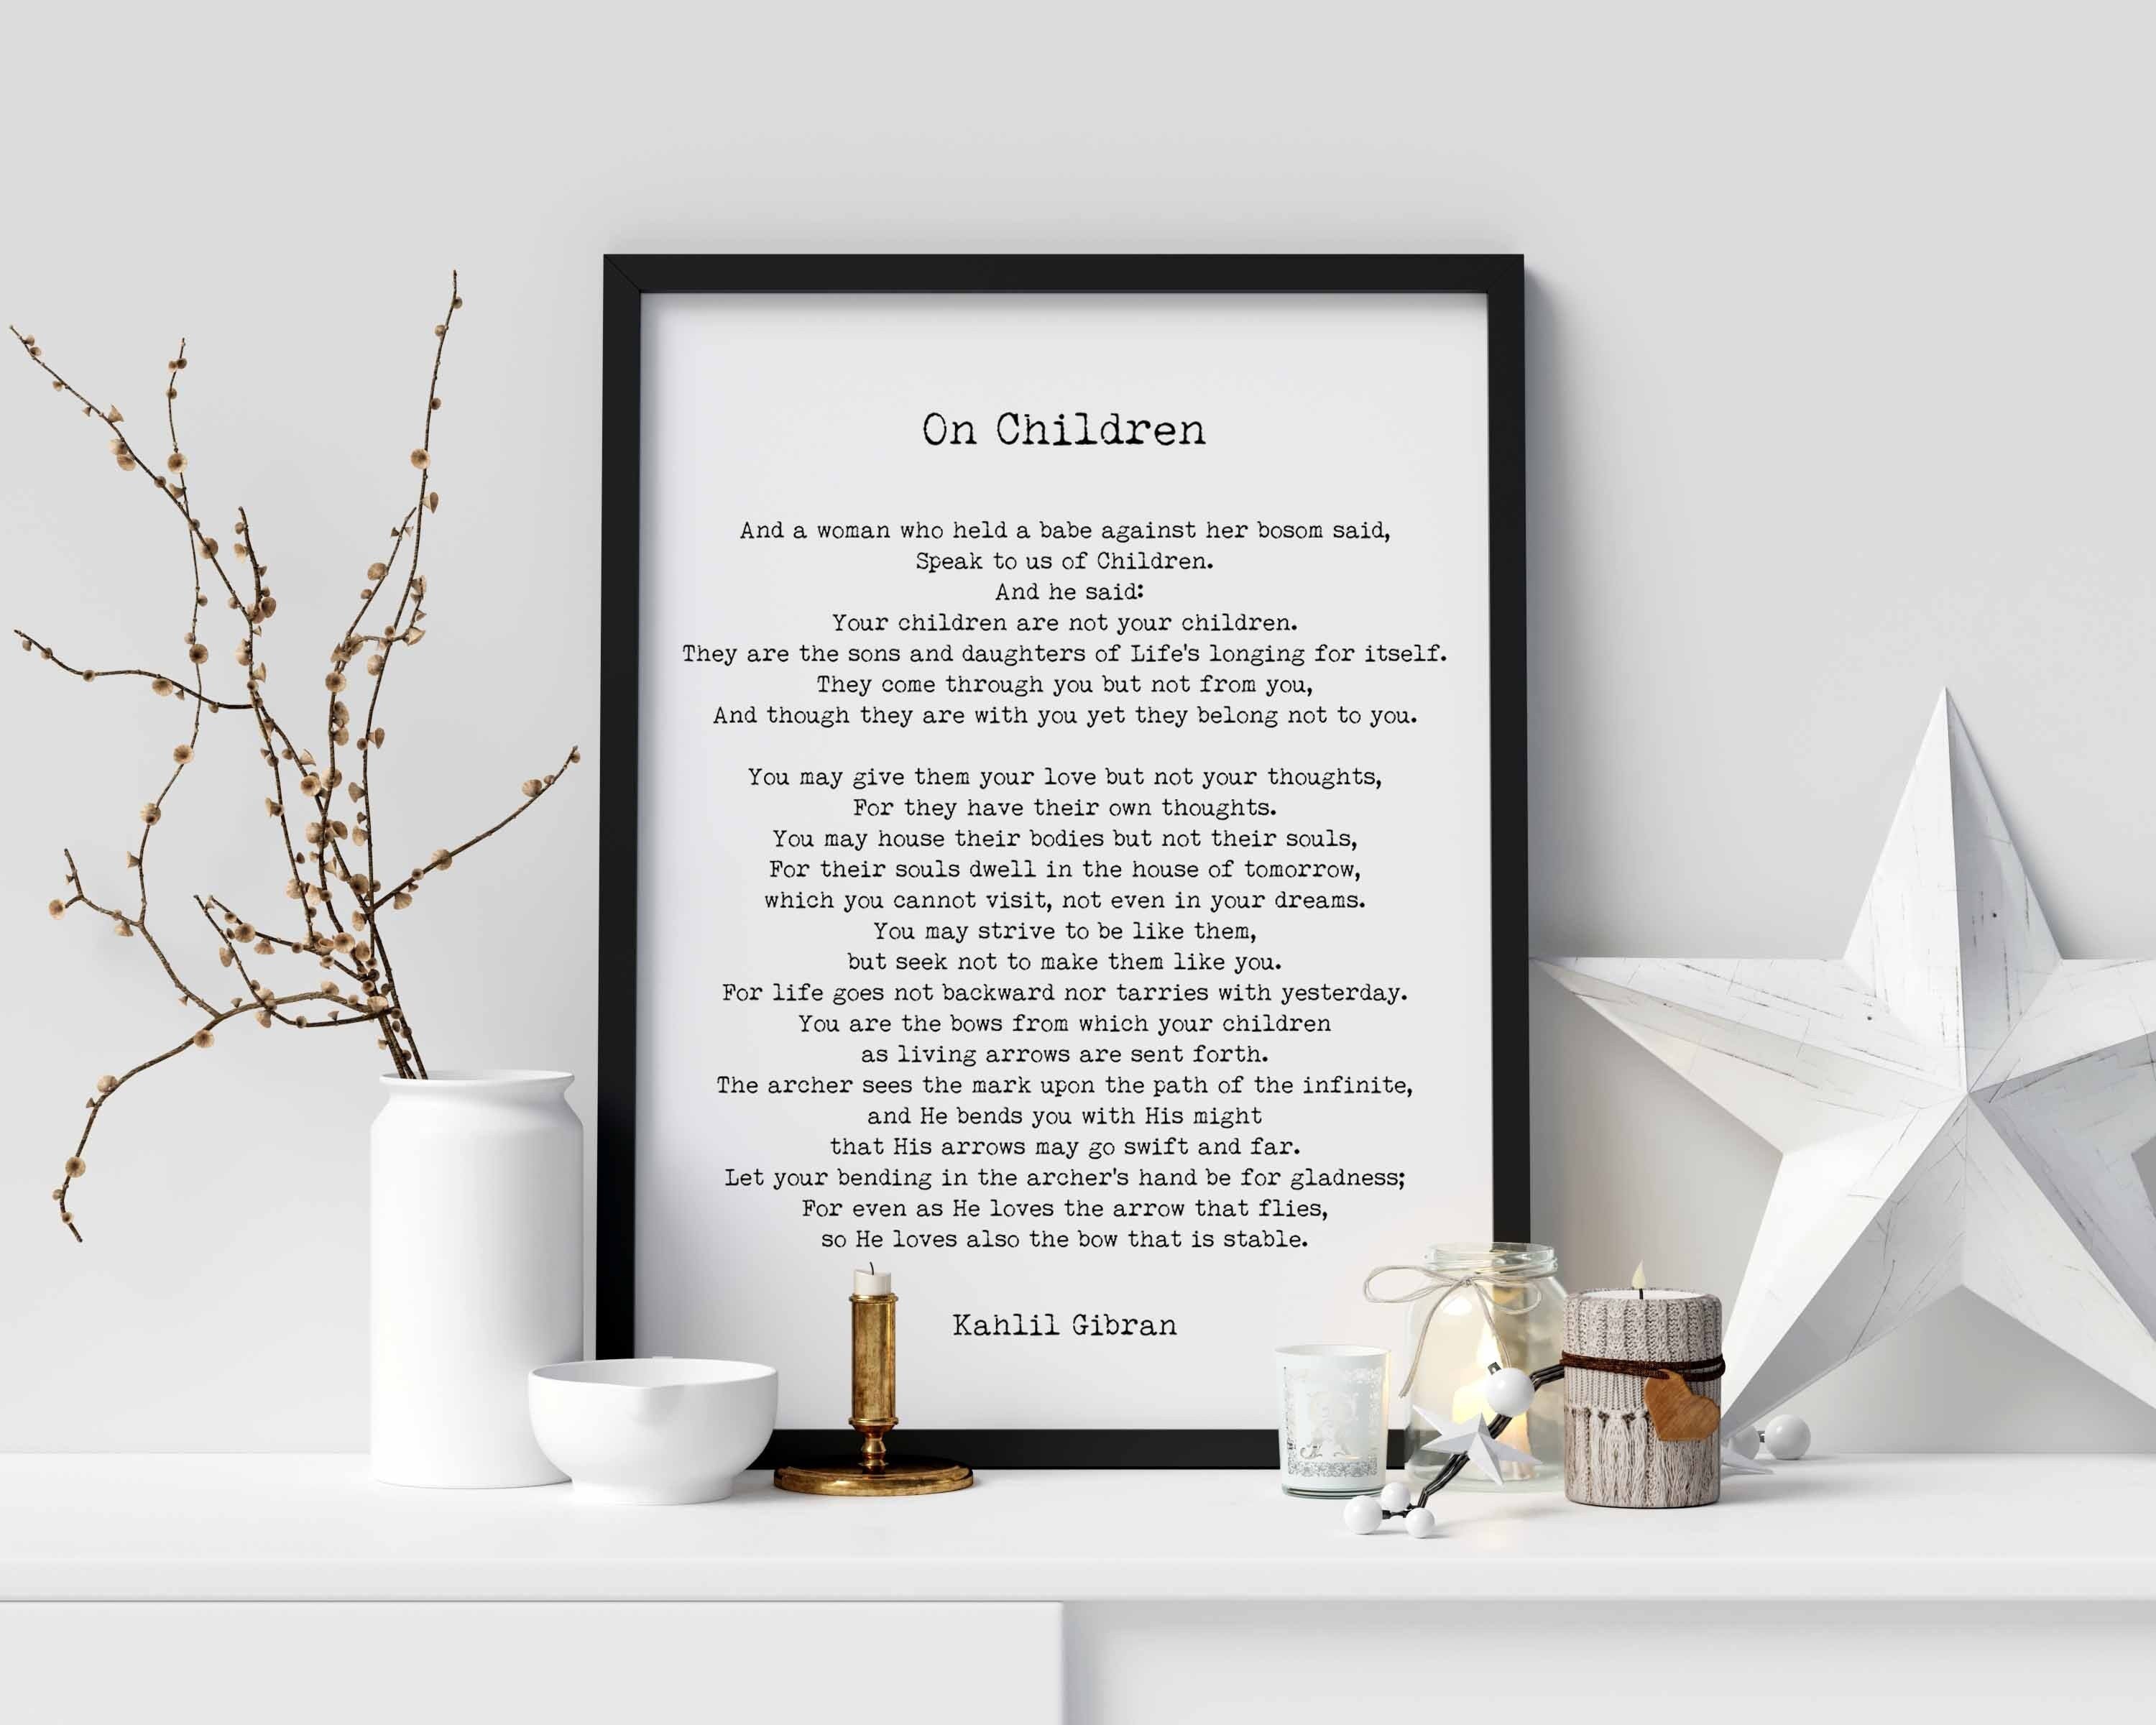 On Children Poem Kahlil Gibran Wall Art Prints unframed in Black & White or Cream and Black